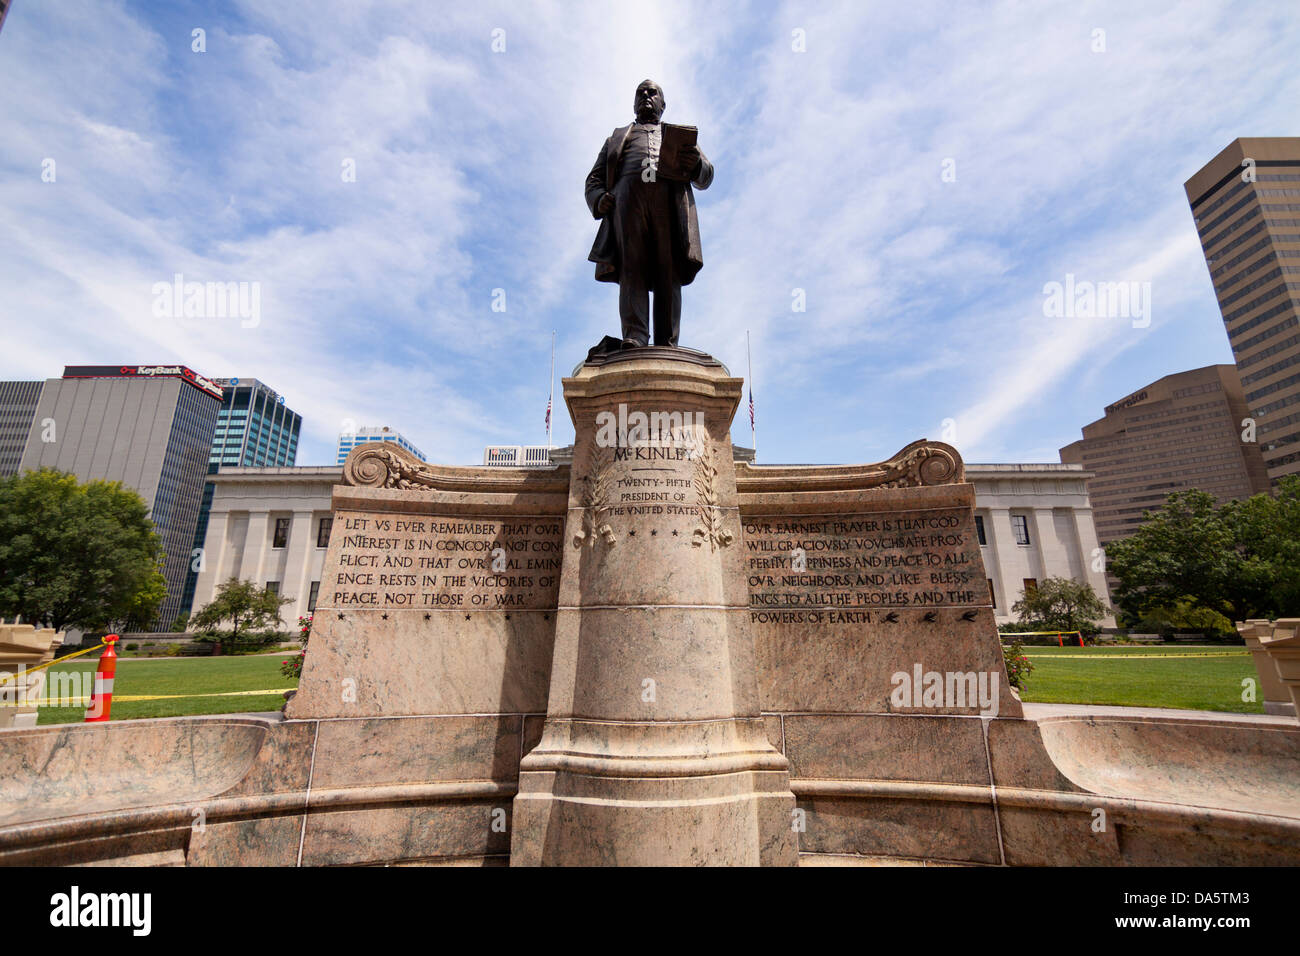 The McKinley memorial at the Ohio Statehouse in Columbus, Ohio, USA. Stock Photo